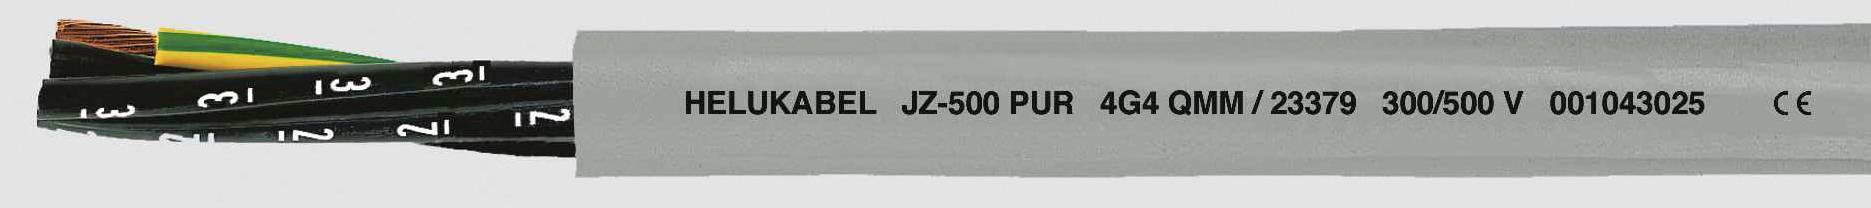 HELUKABEL JZ-500 PUR Steuerleitung 5 G 1.50 mm² Grau 23365 100 m